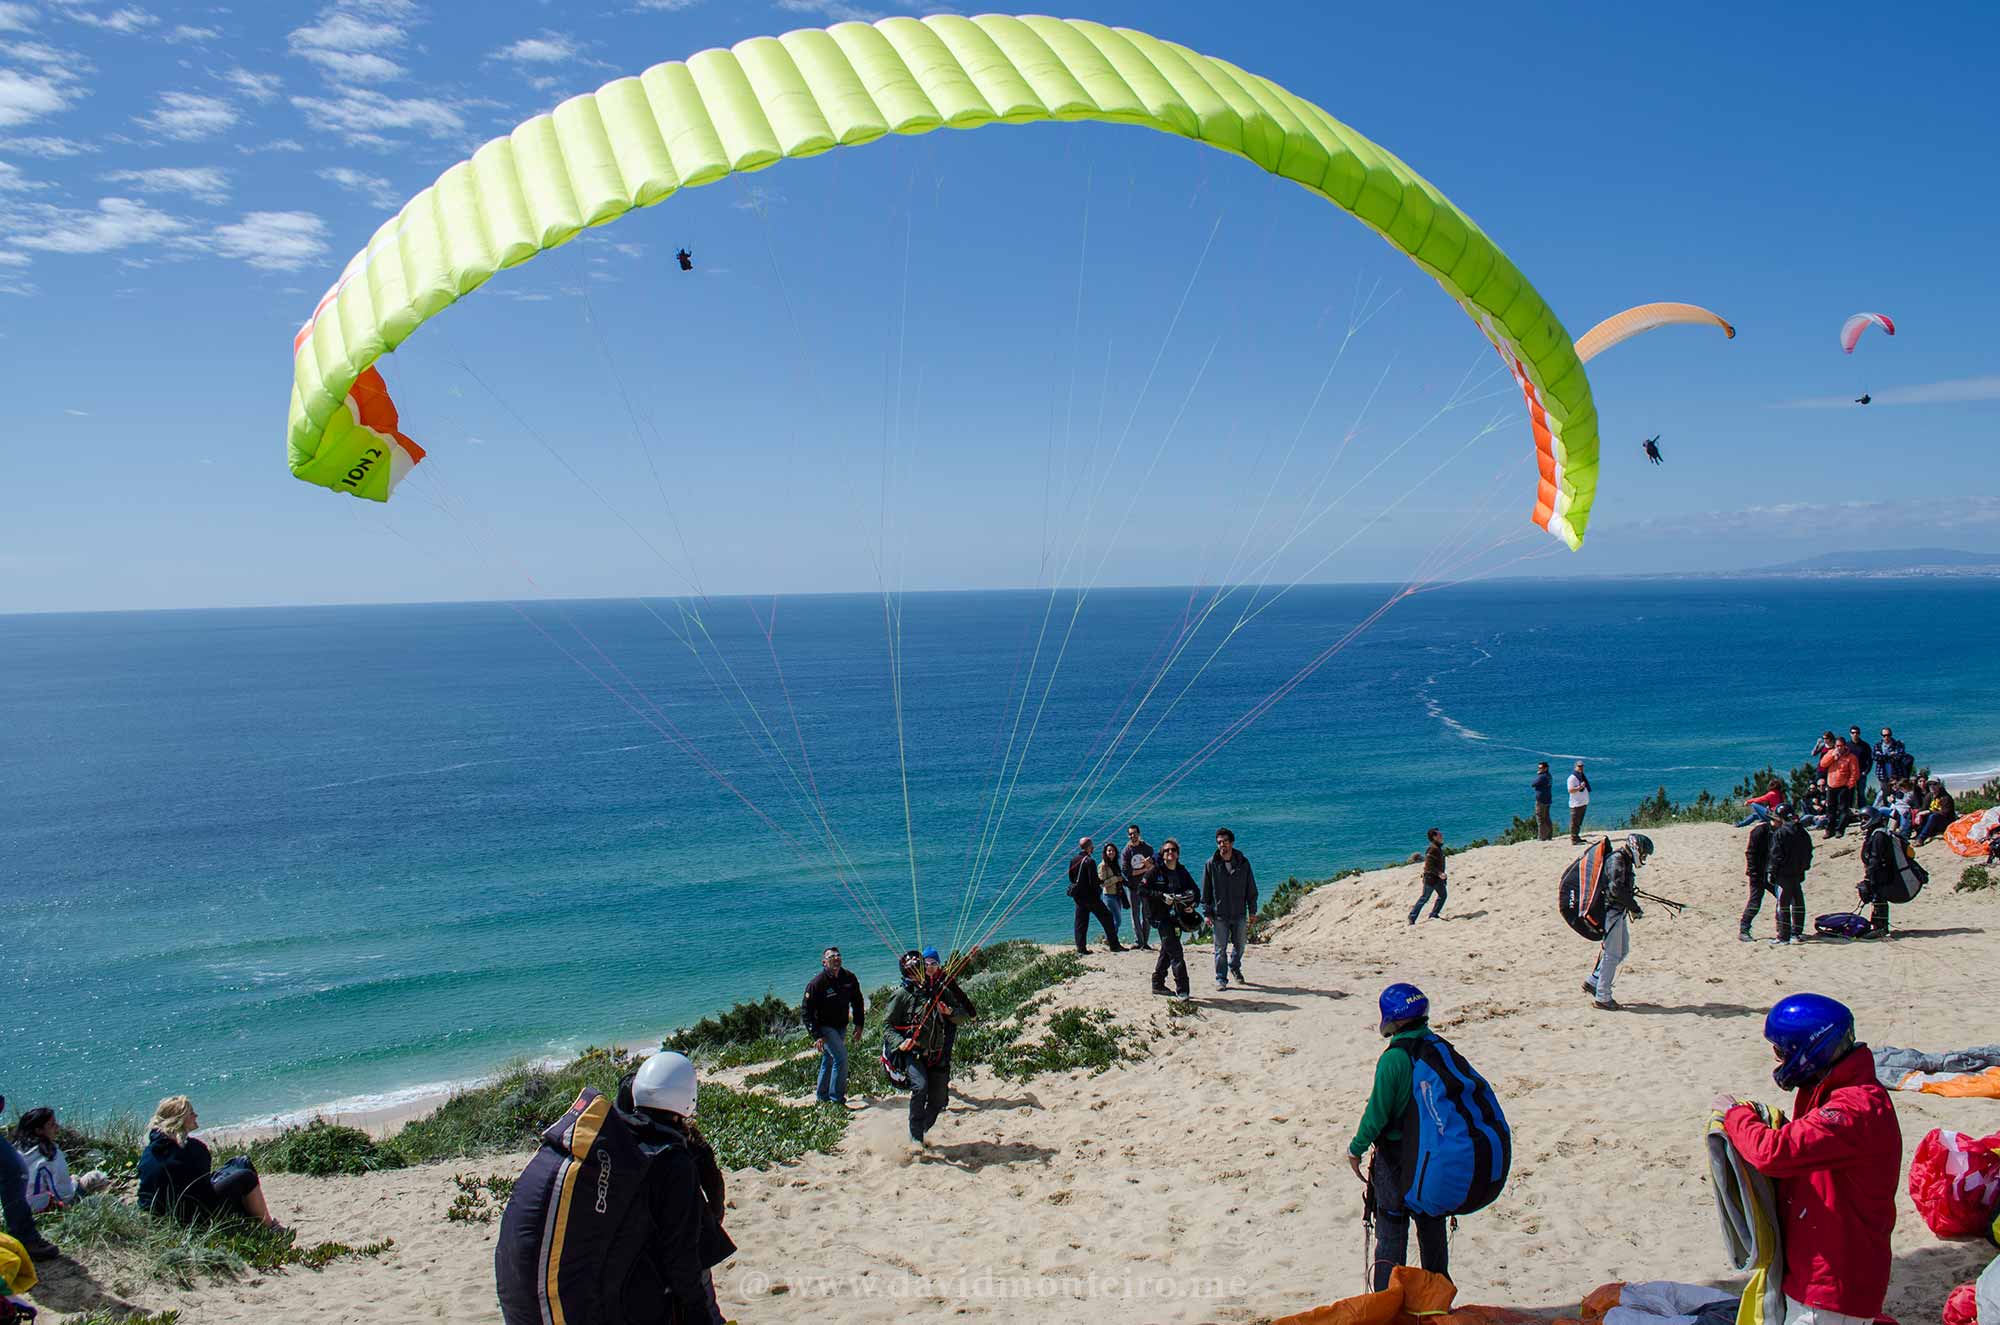 Paragliders at Costa da Caparica